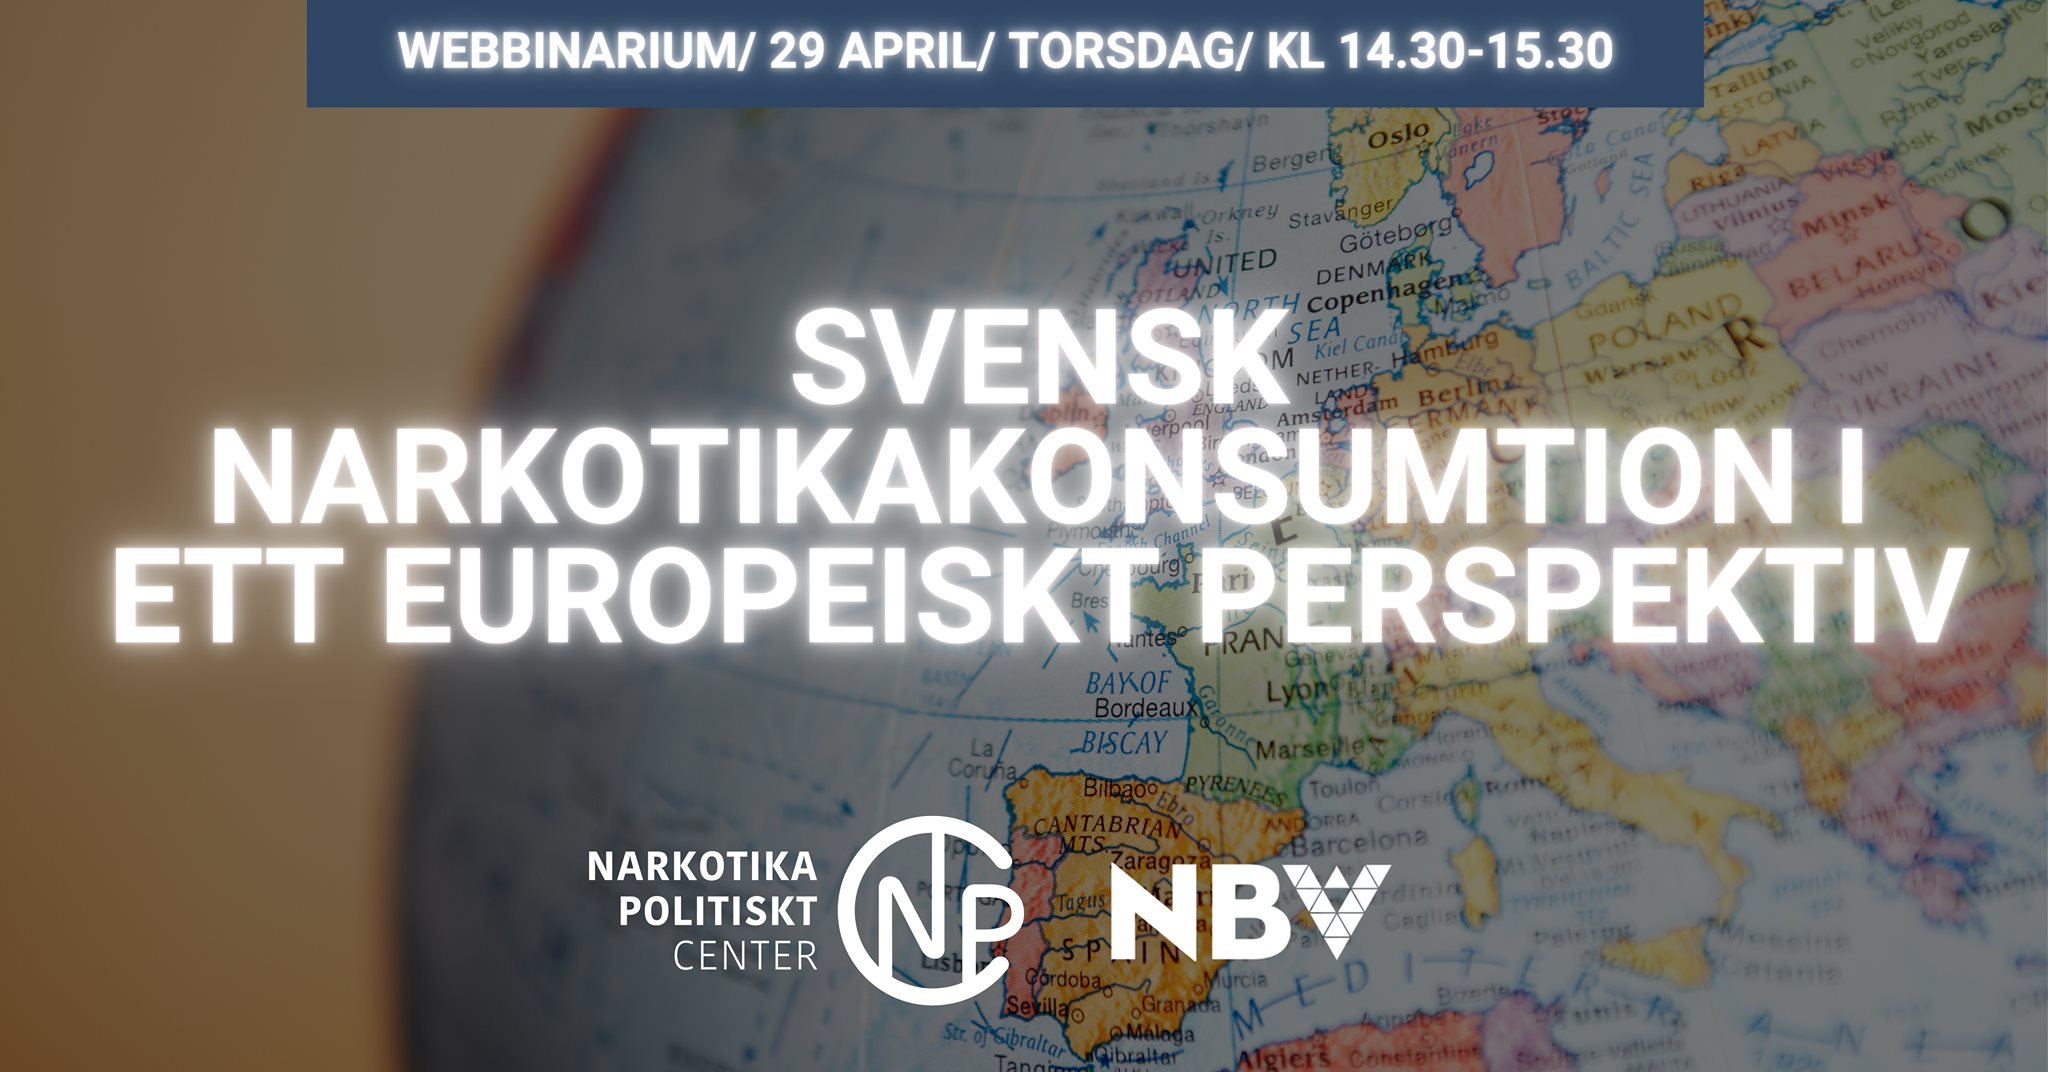 Webbinarium: Svensk narkotikakonsumtion i ett europeiskt perspektiv